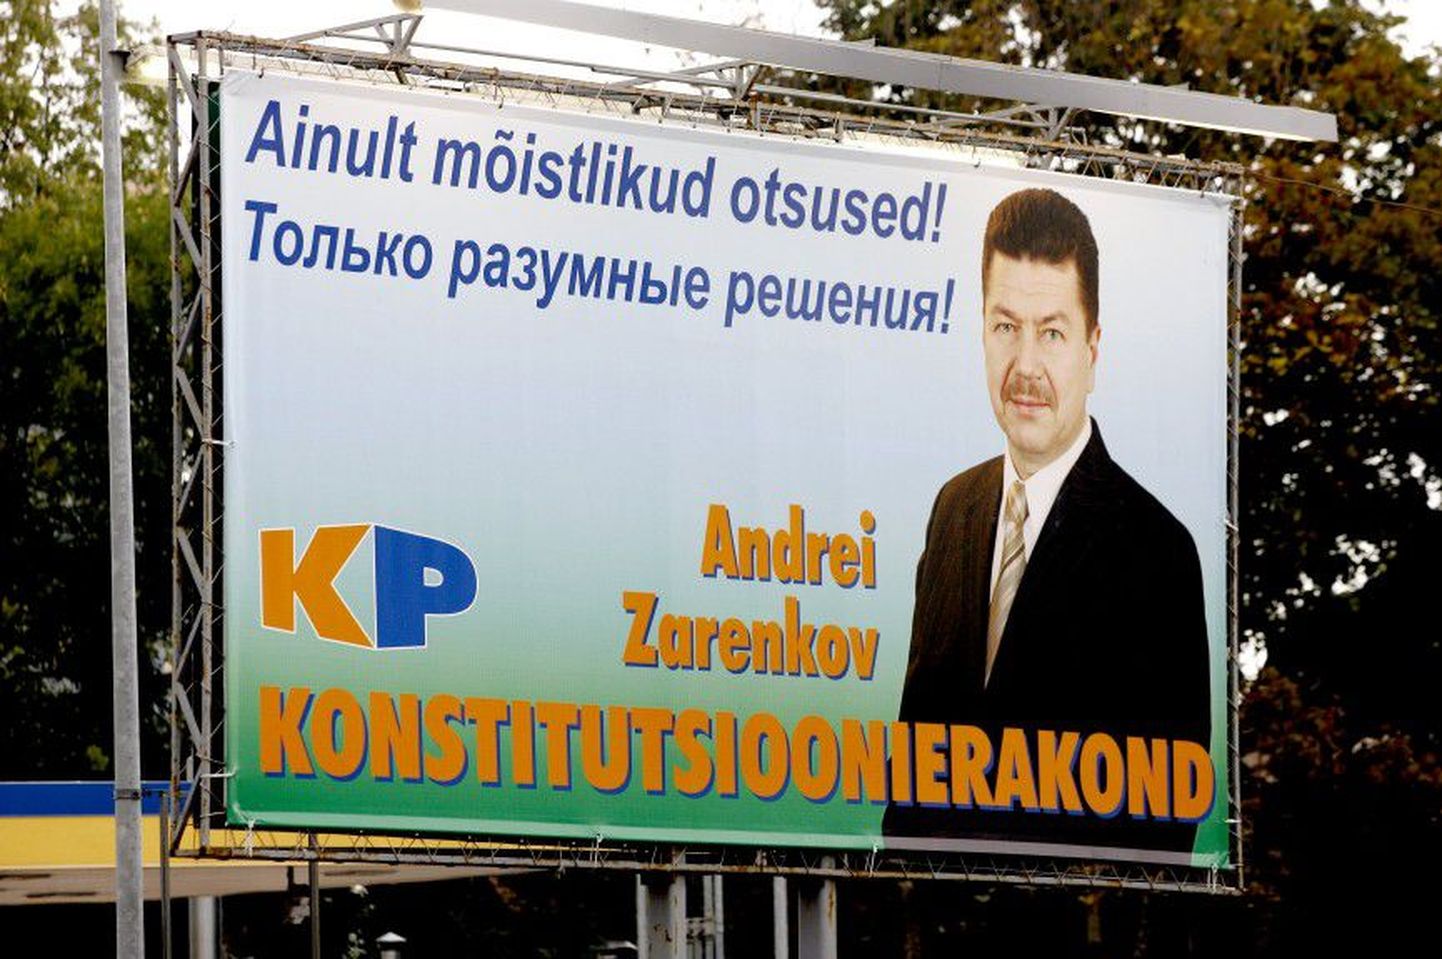 Kuigi riigikogu valimised olid alles tänavu märtsis, ilutses juba mullu augustis Tallinnas bussijaama
lähedal konstitutsioonipartei juhi Andrei Zarenkovi valimisplakat.